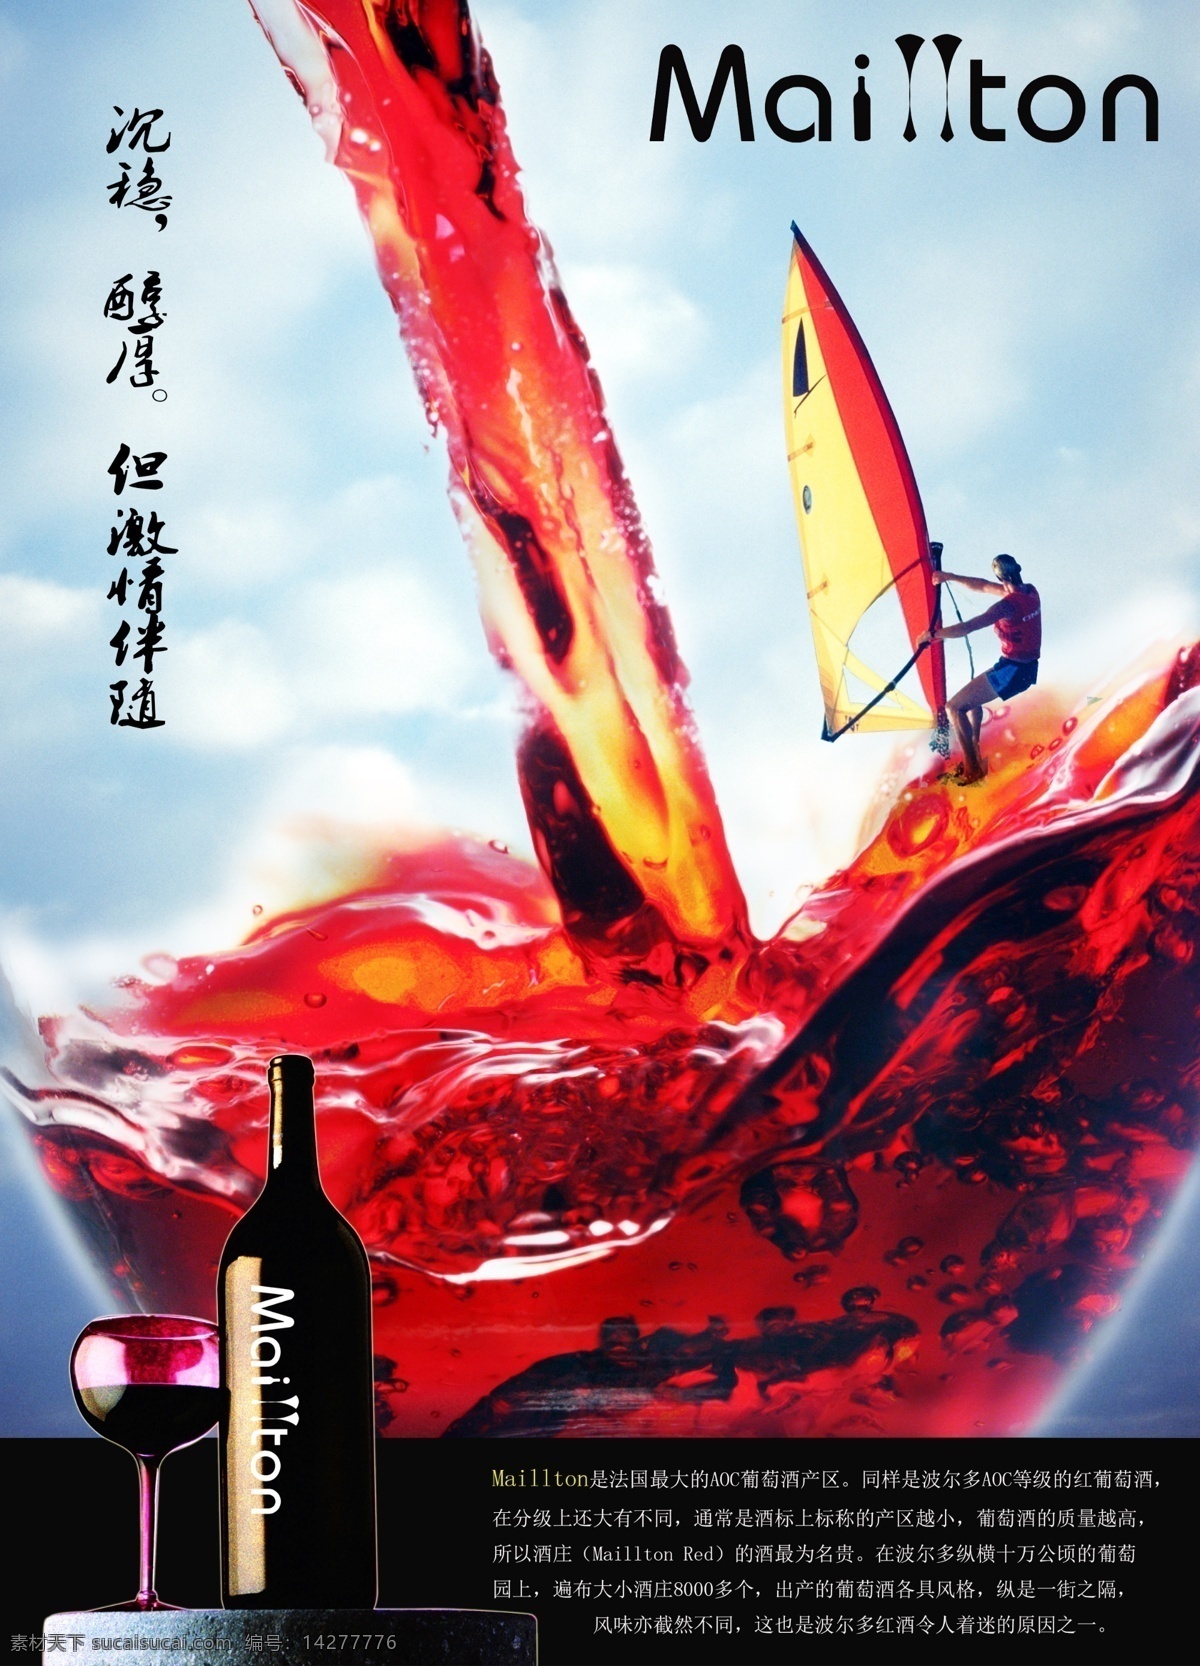 高清 红酒 产品 海报 ps作业 商业广告 产品海报 分层